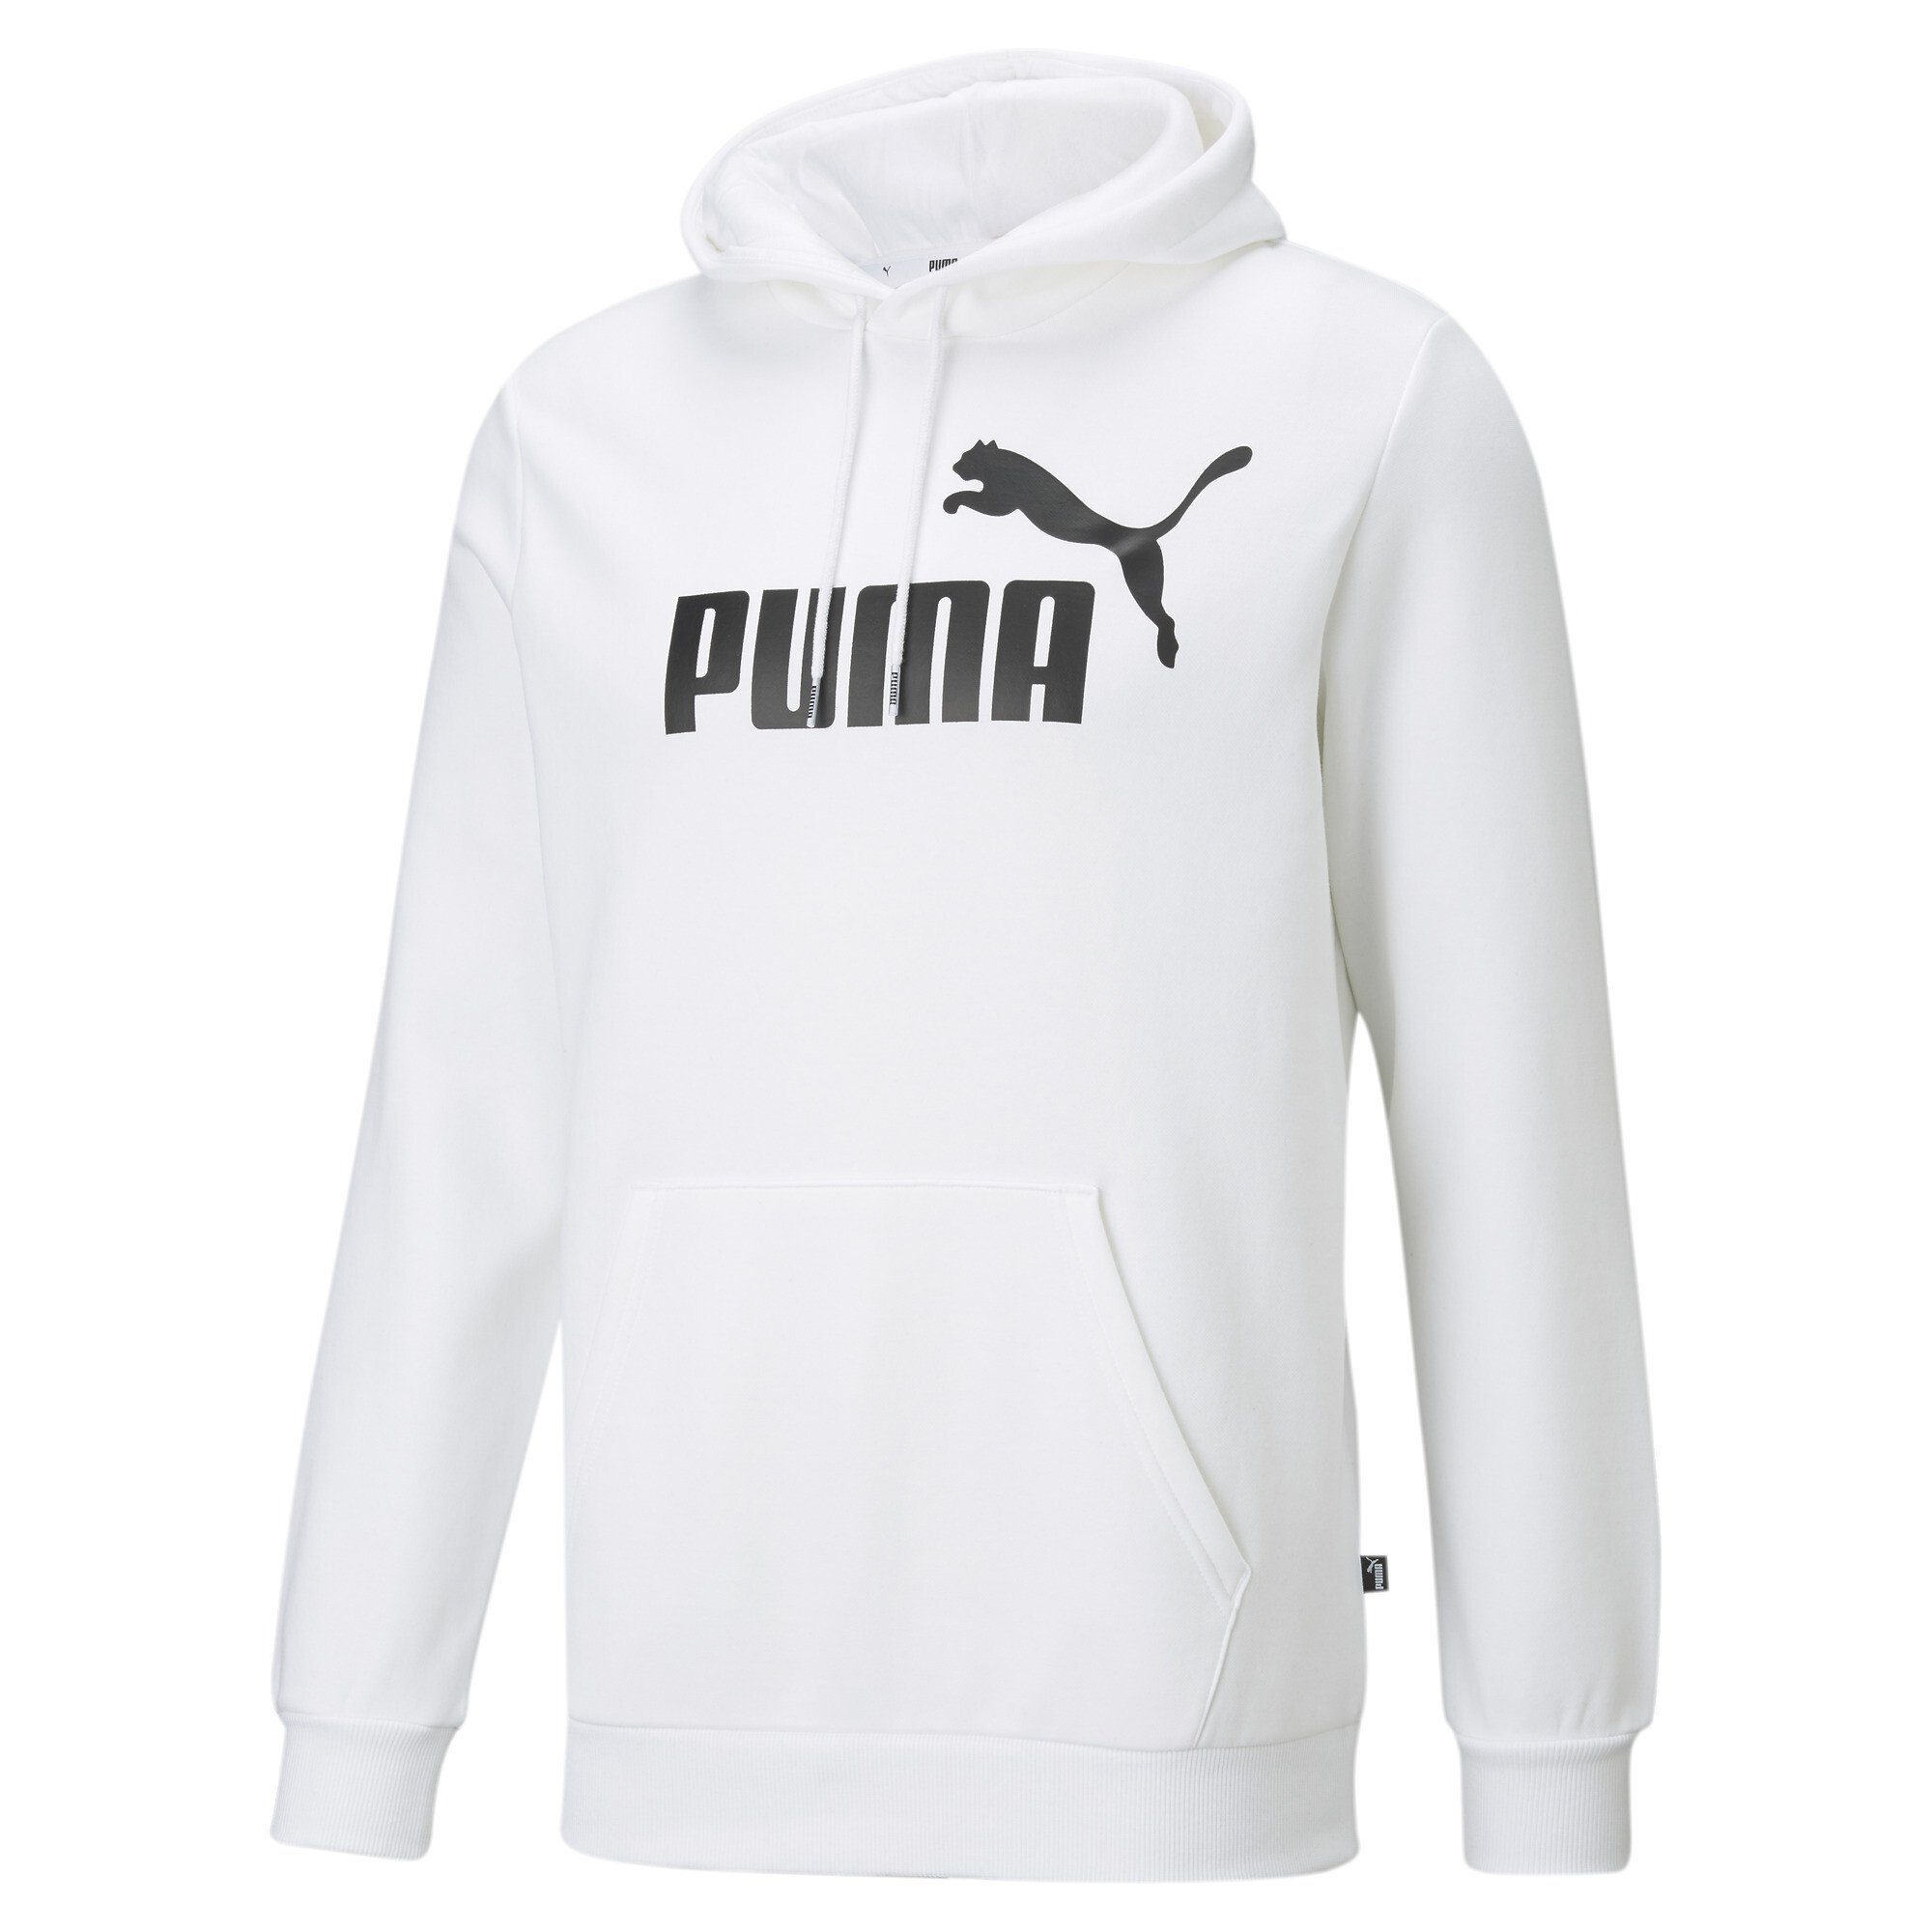 PUMA Herren Pullover online kaufen | OTTO